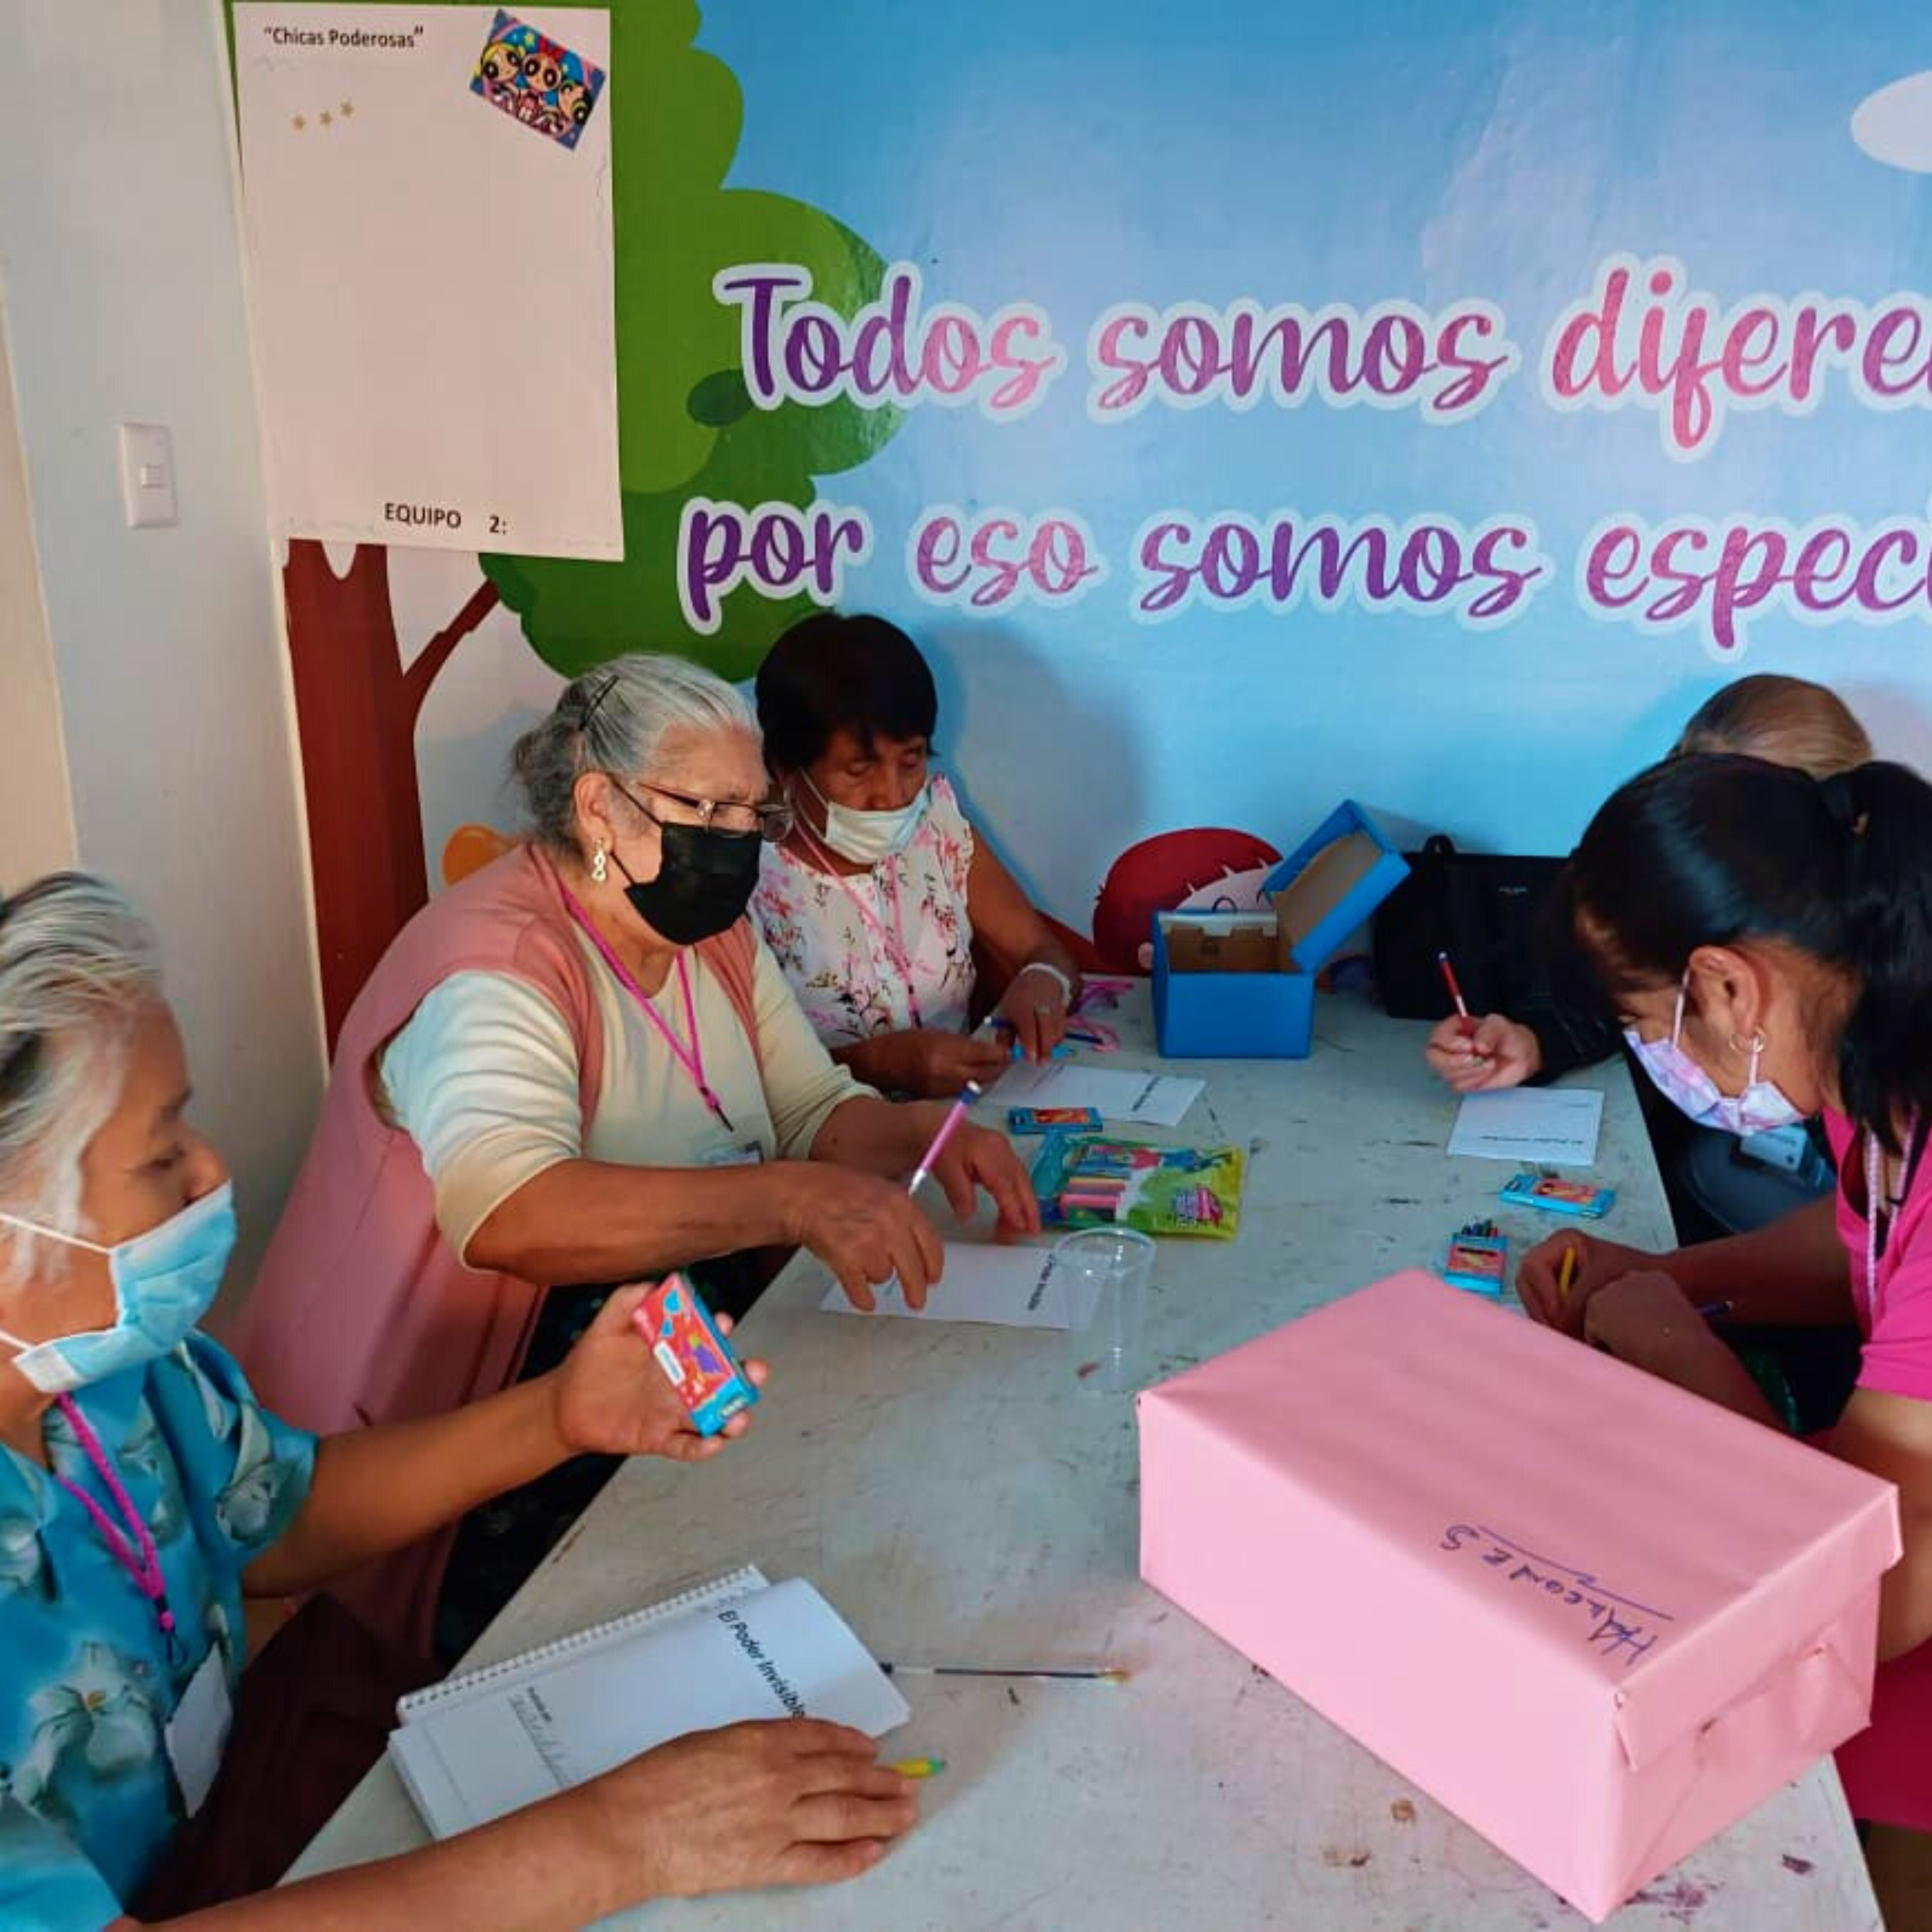 SFK brought to Seniors in San Luis Potosi, Mexico